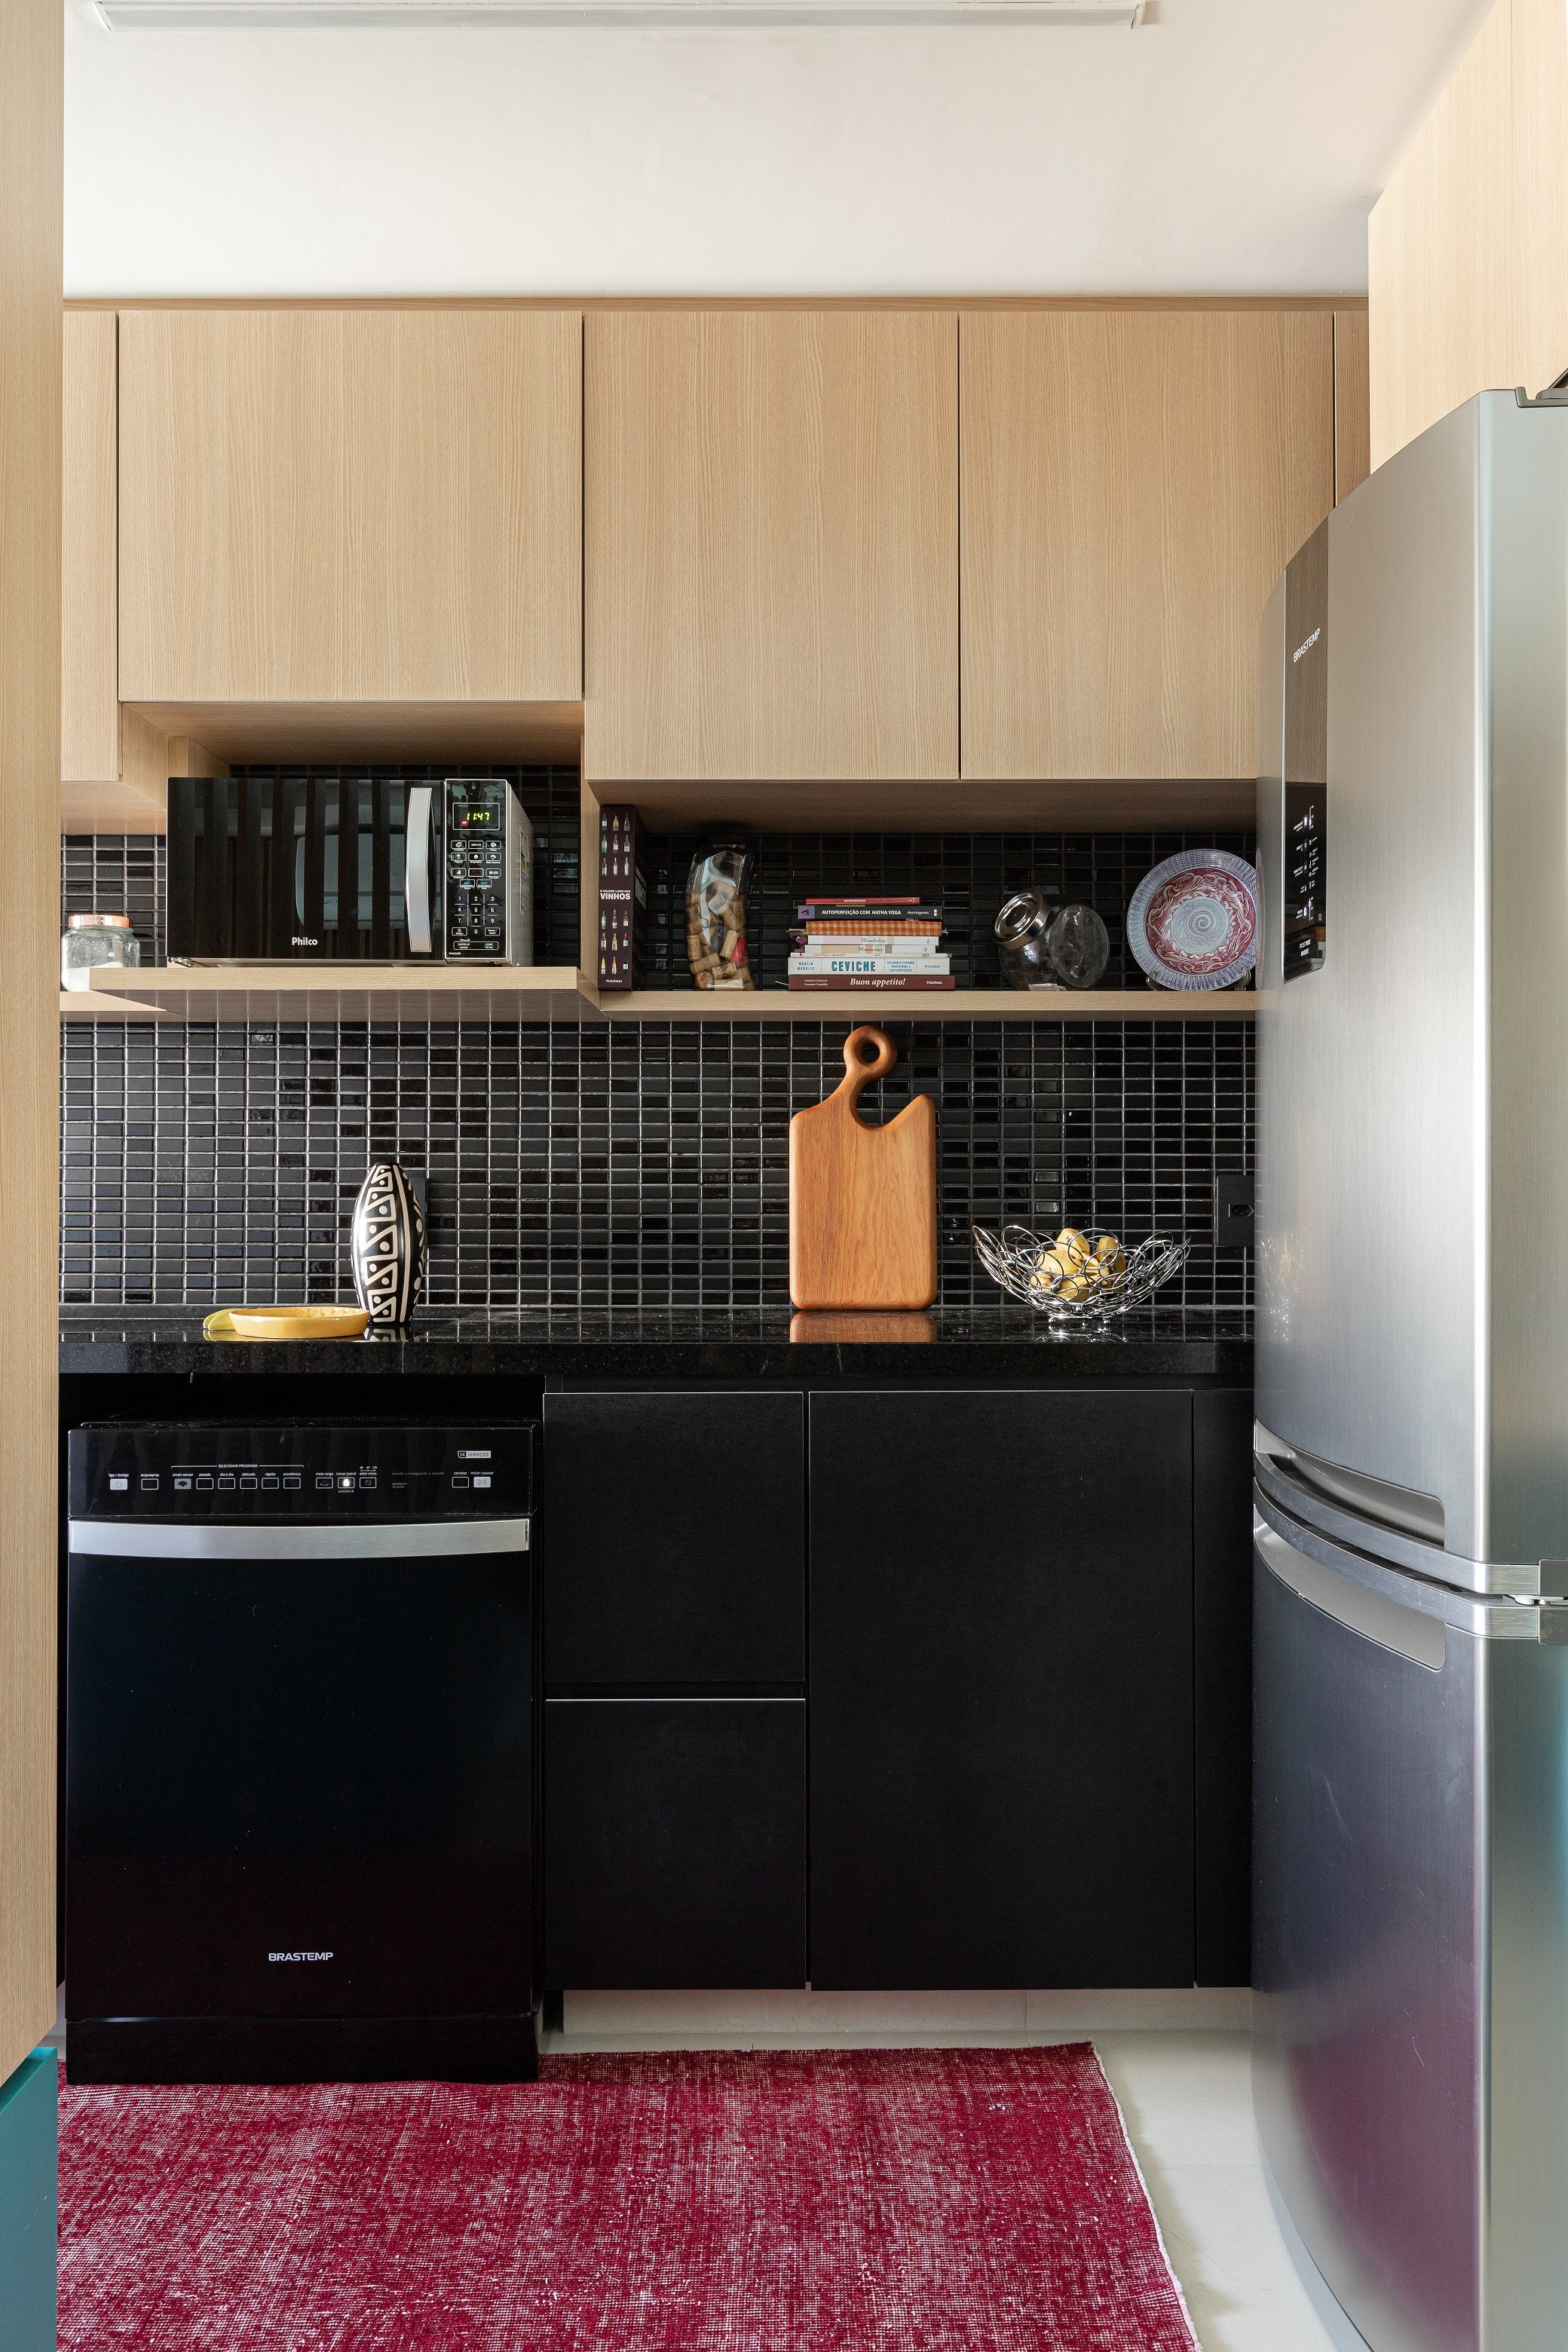 Décor do dia: cozinha preta com madeira clara e marcenaria planejada (Foto: Divulgação)